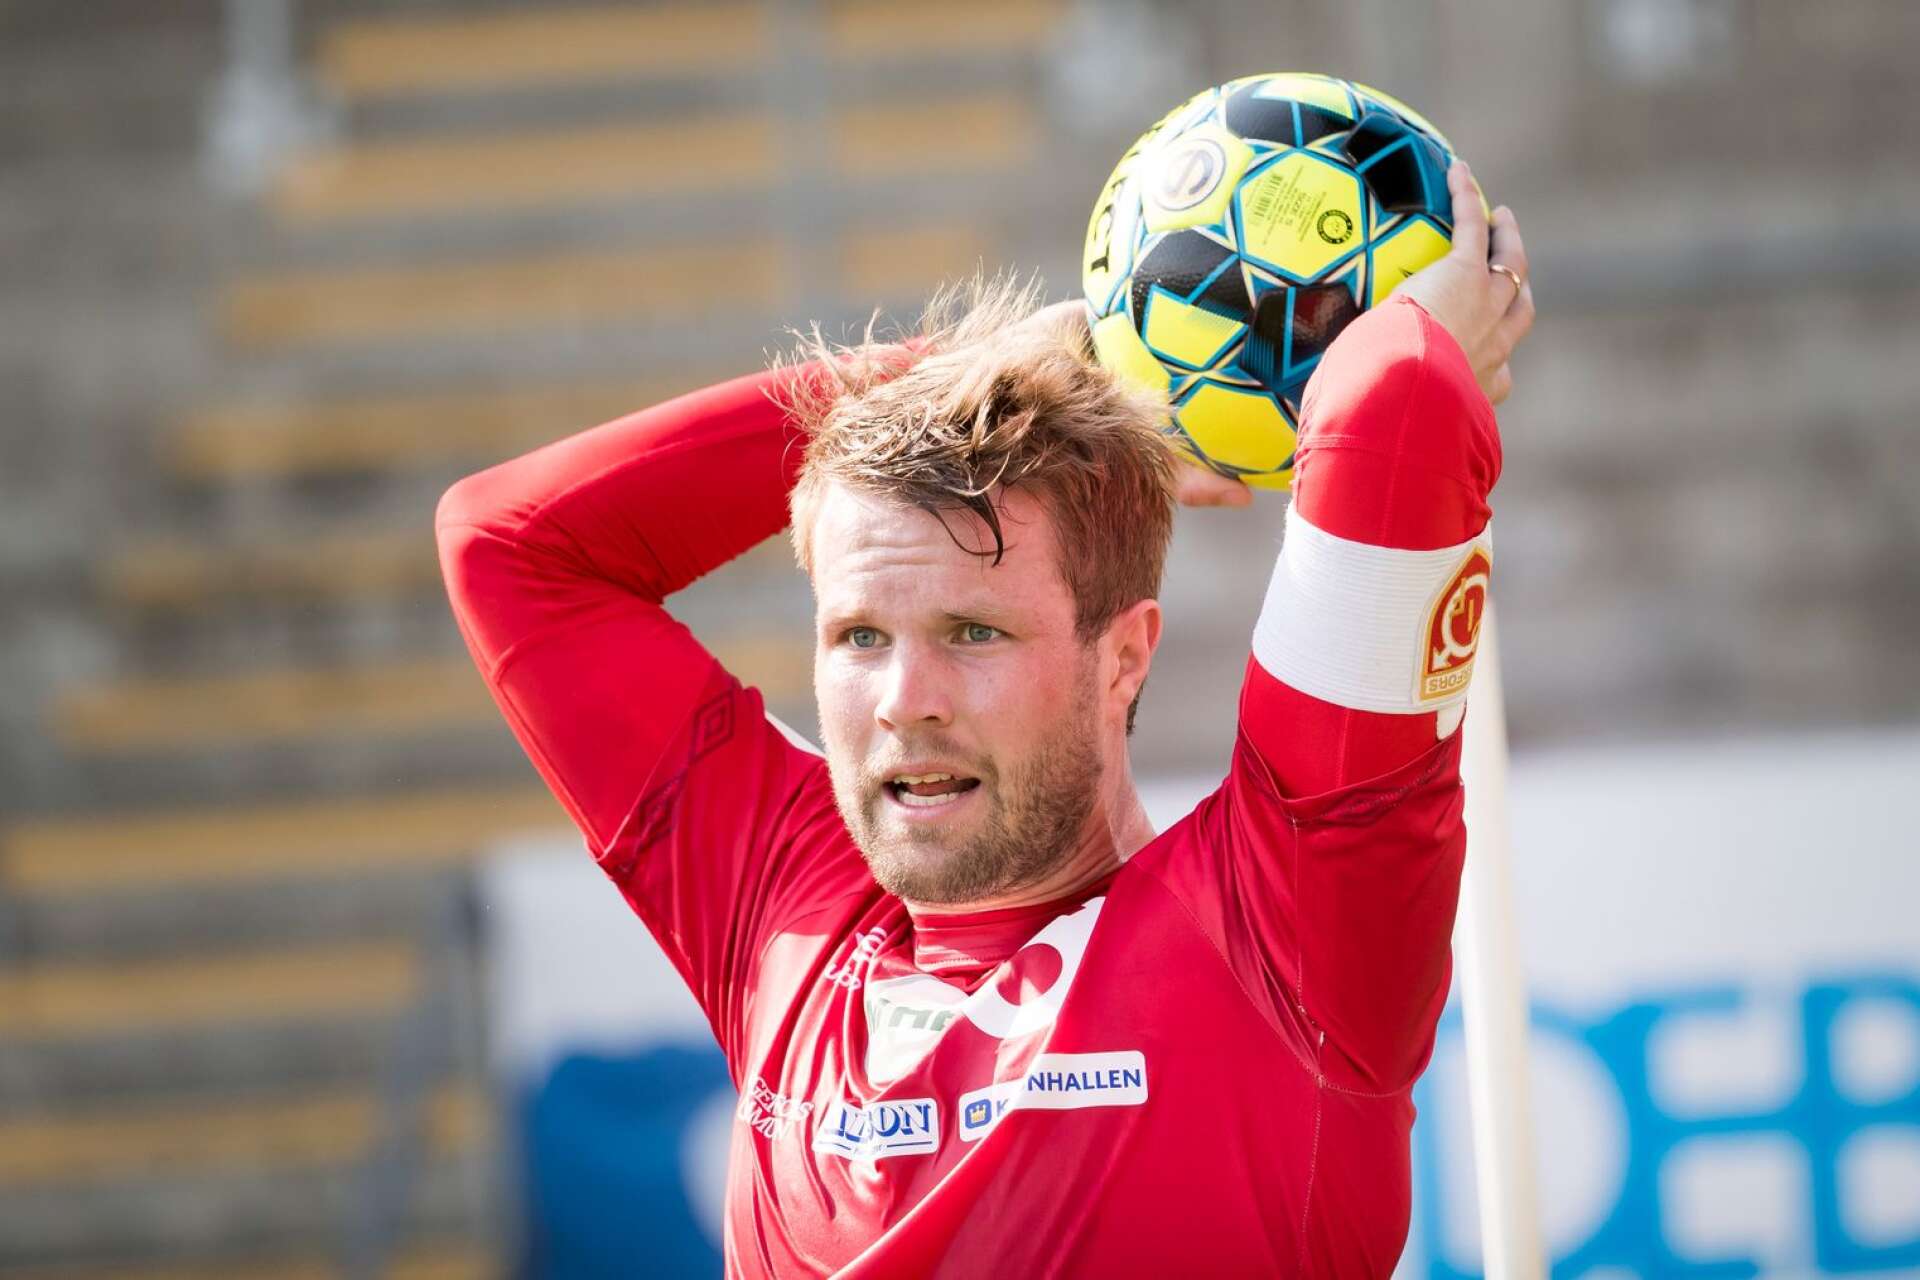 Christoffer Wiktorsson väntas ta beslut om sin fotbollsframtid till helgen.